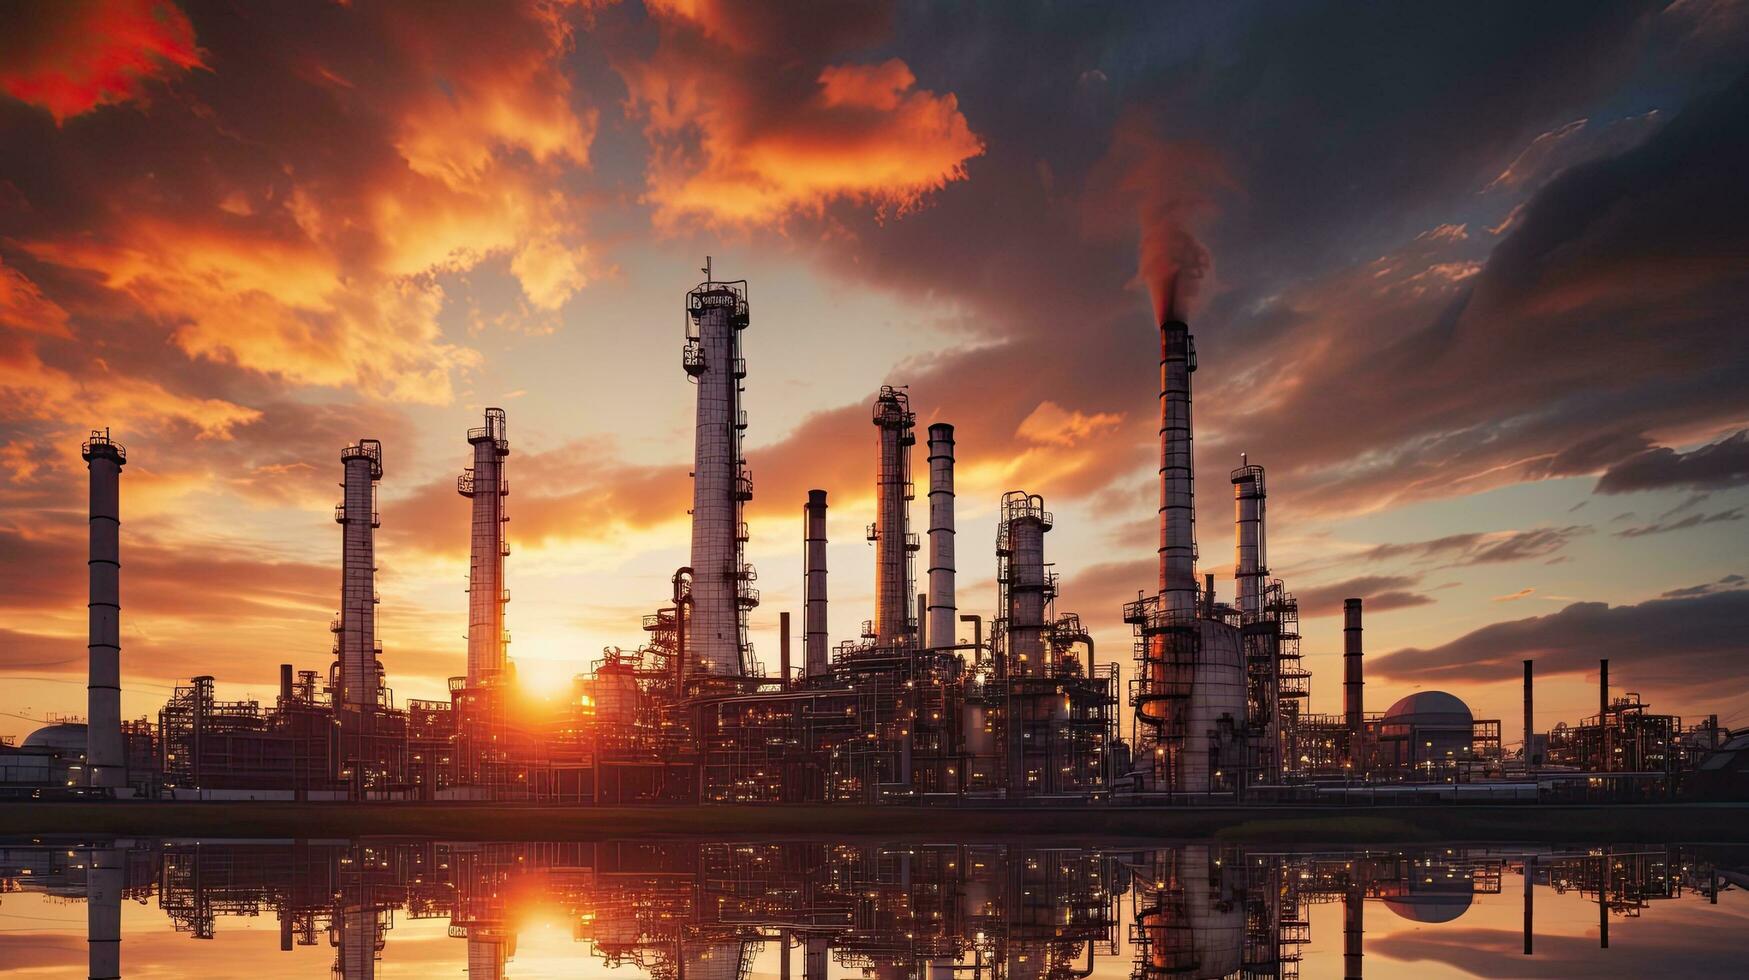 soluppgång bakgrund med ett orange himmel ställer ut de petrokemiska industri highlighting ett olja raffinaderi växt och höga kolumn foto